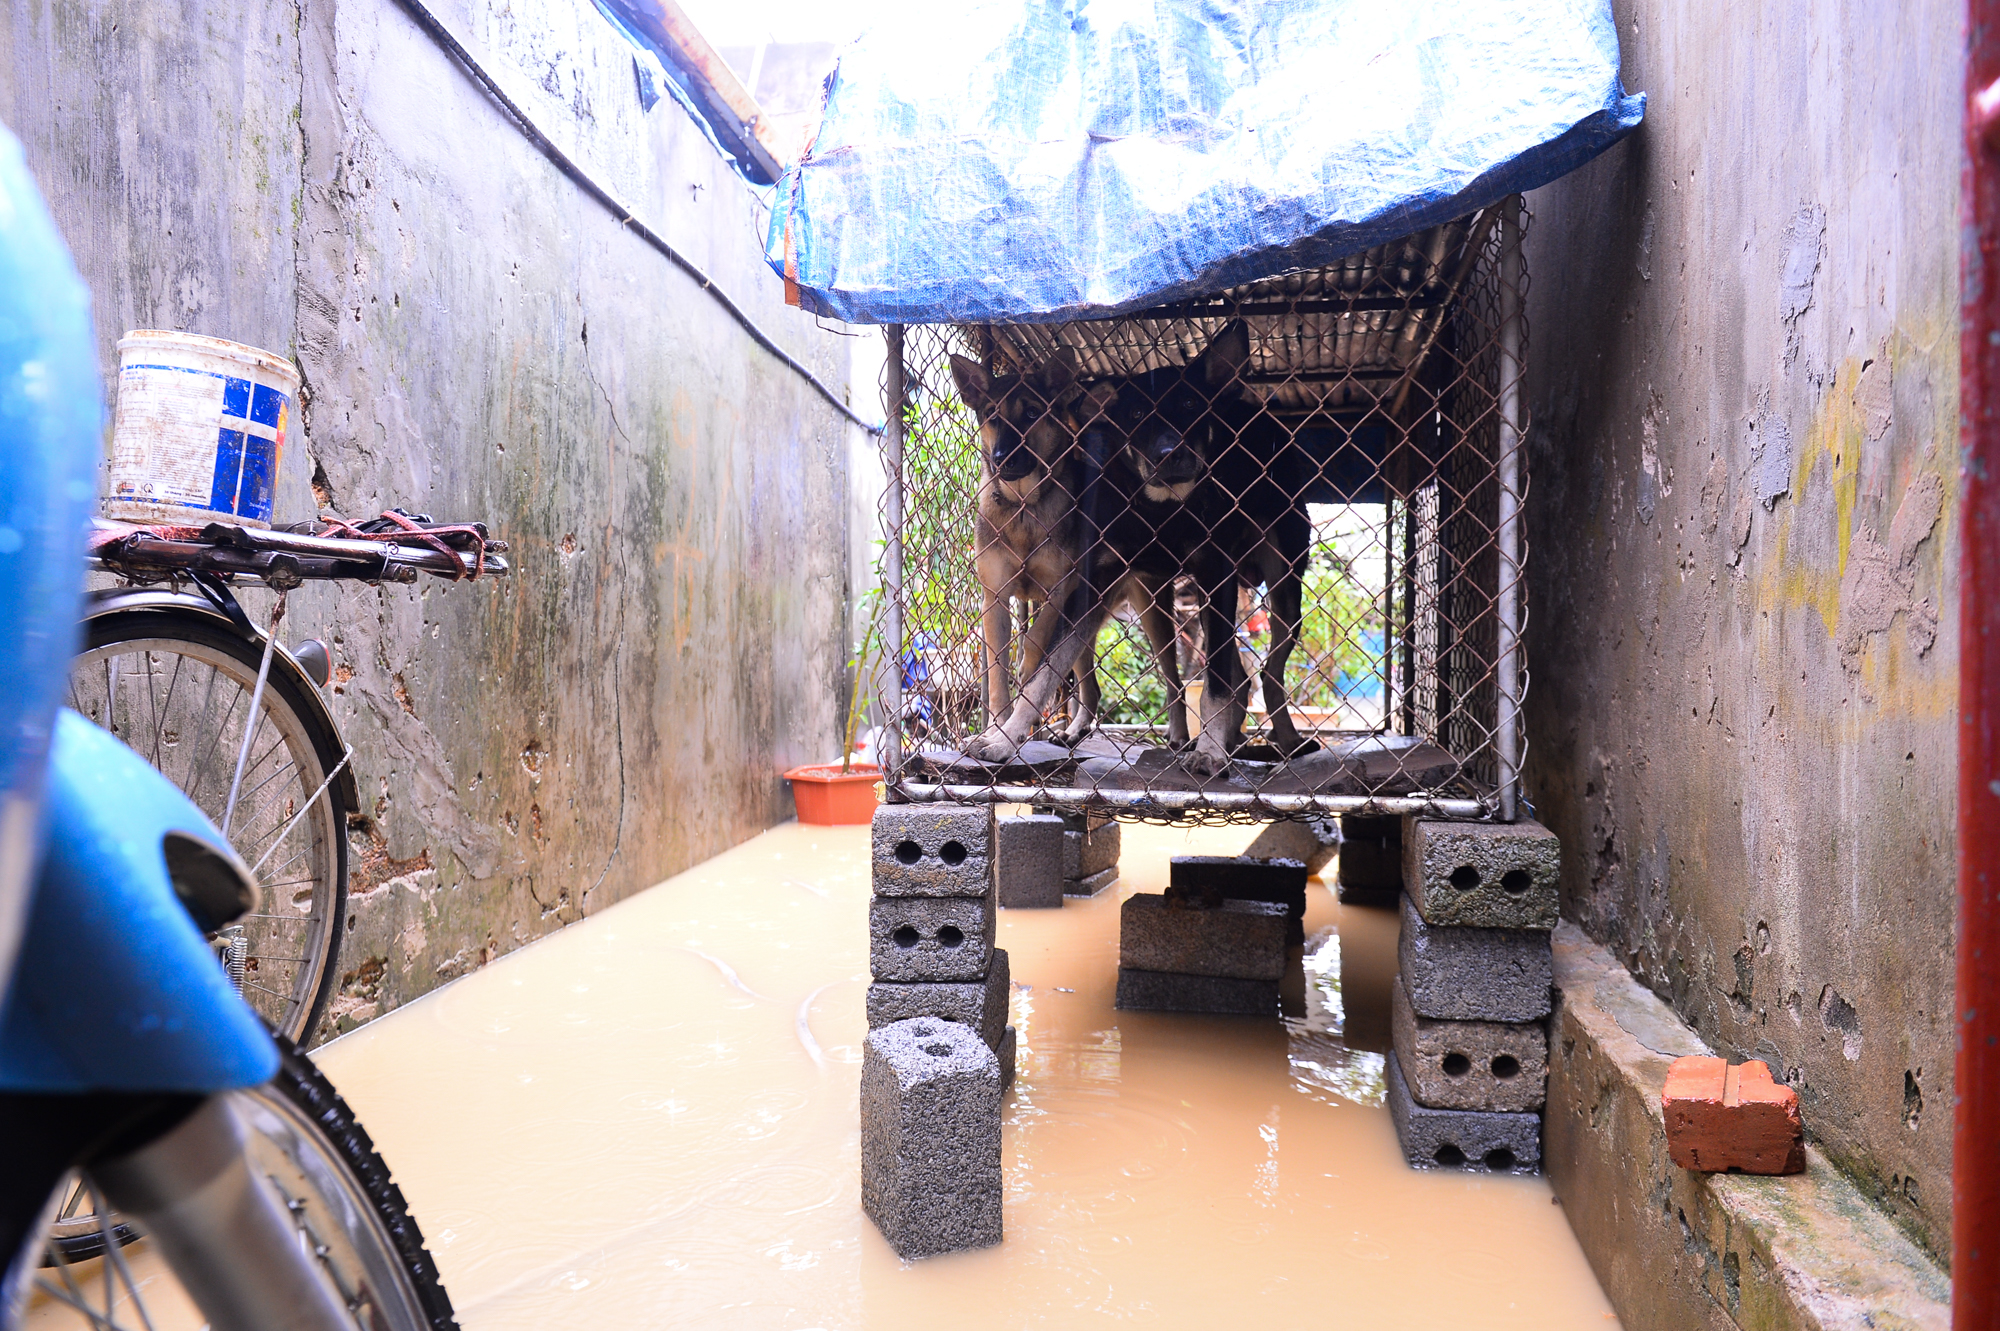 Người dân ngoại thành Hà Nội bì bõm trong nước lũ sau cơn mưa lớn: &quot;Nước lũ lên nhanh quá, chúng tôi chạy đồ không kịp&quot; - Ảnh 9.